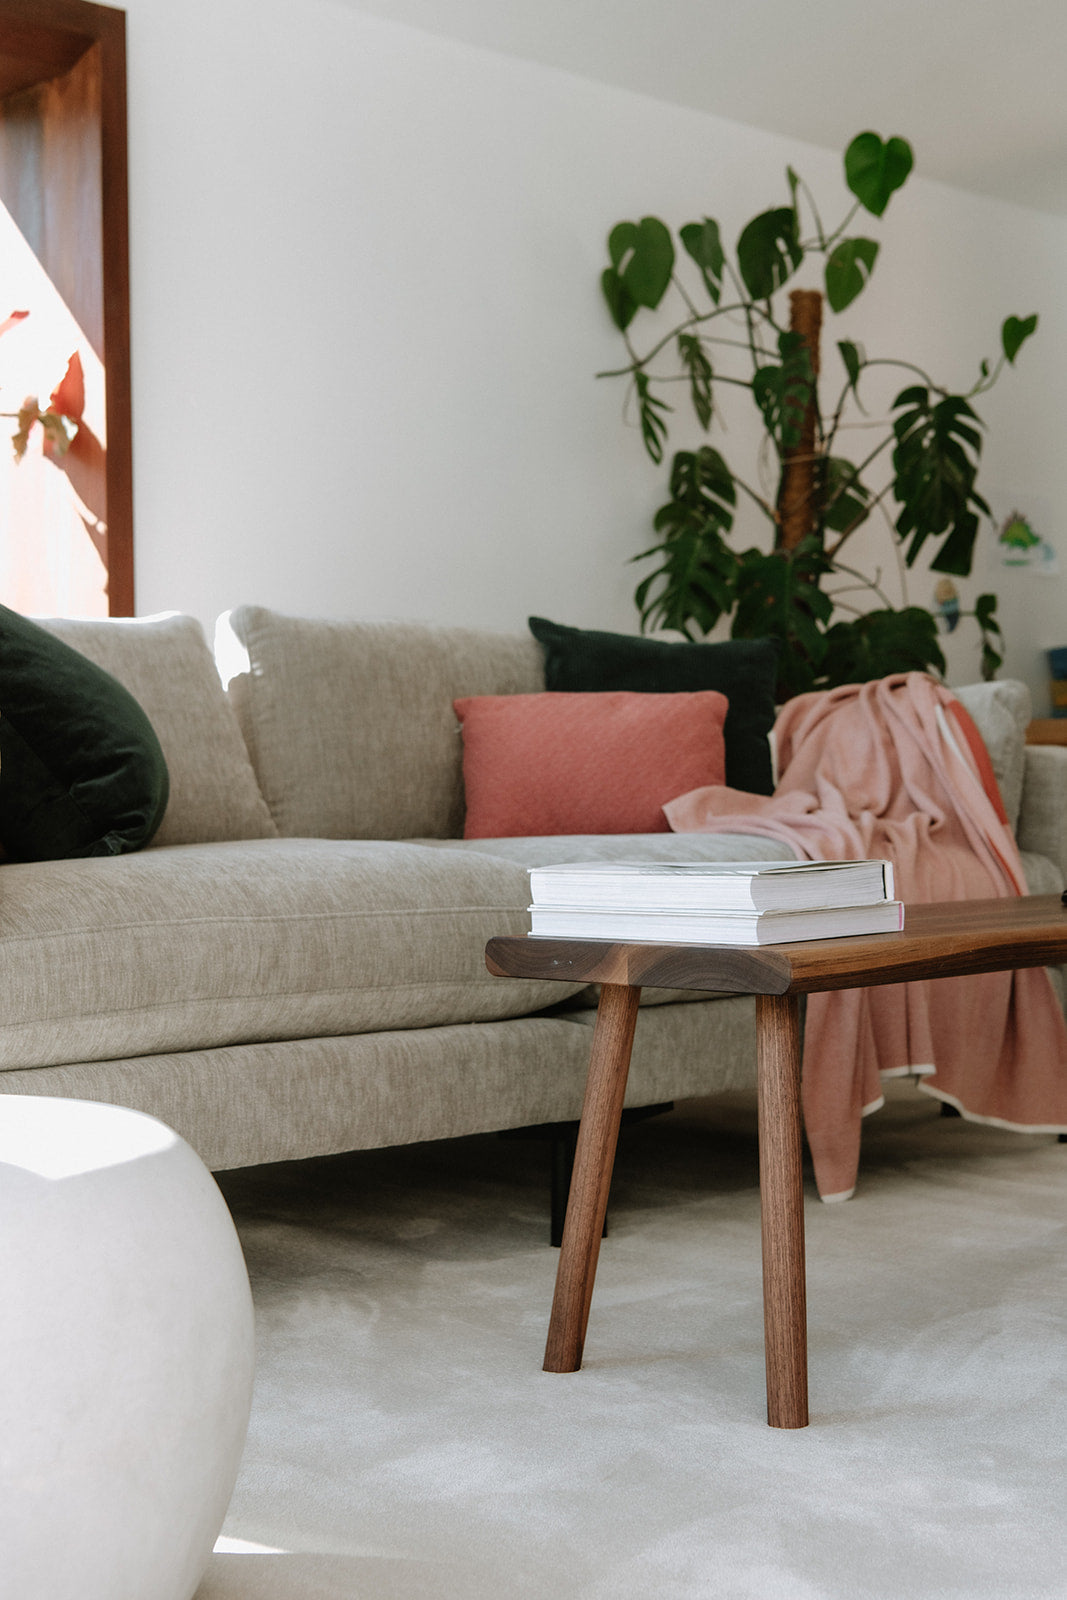 Huiselijk interieur met zetel en bijzettafel op beigekleurig, rechthoekig eco-frienly vloerkleed.